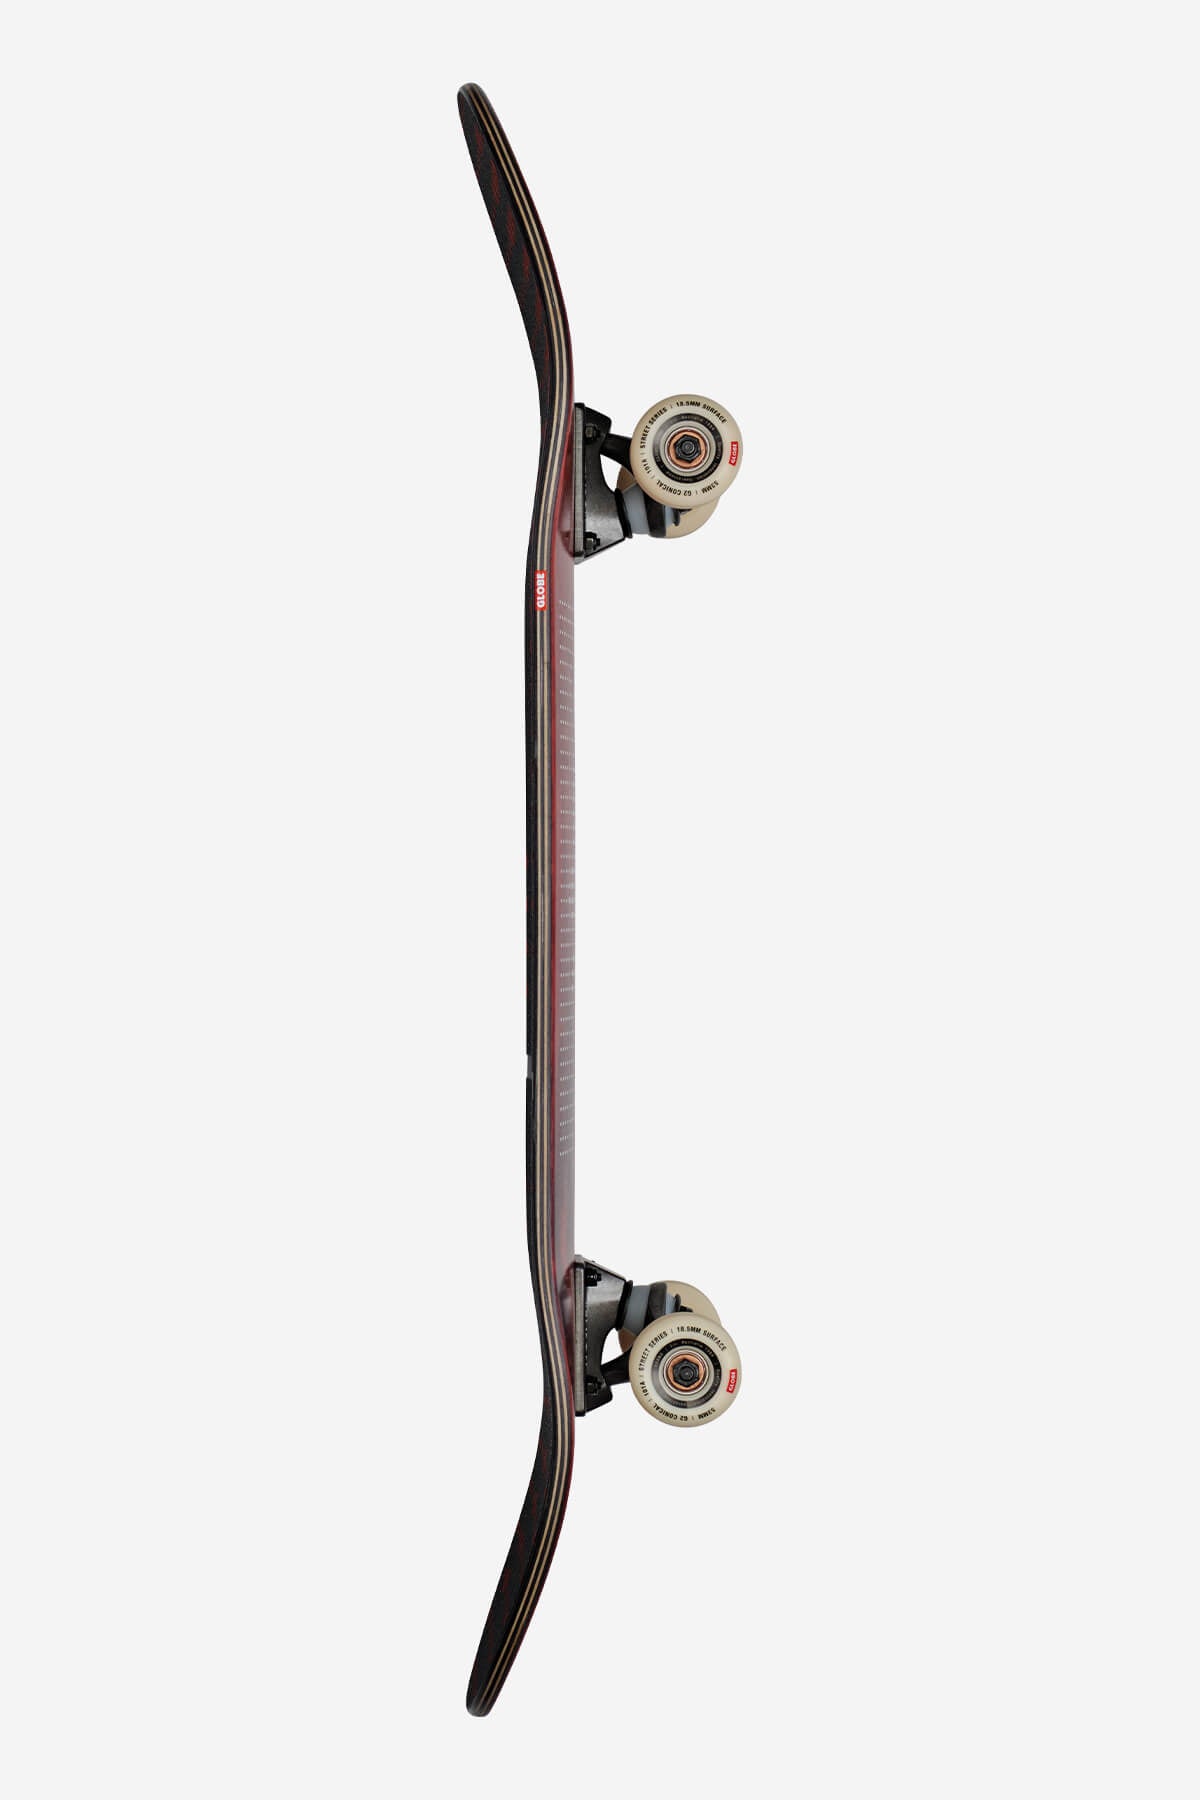 Globe - G2 Dot Gain - Rose - 8.125" Complete Skateboard